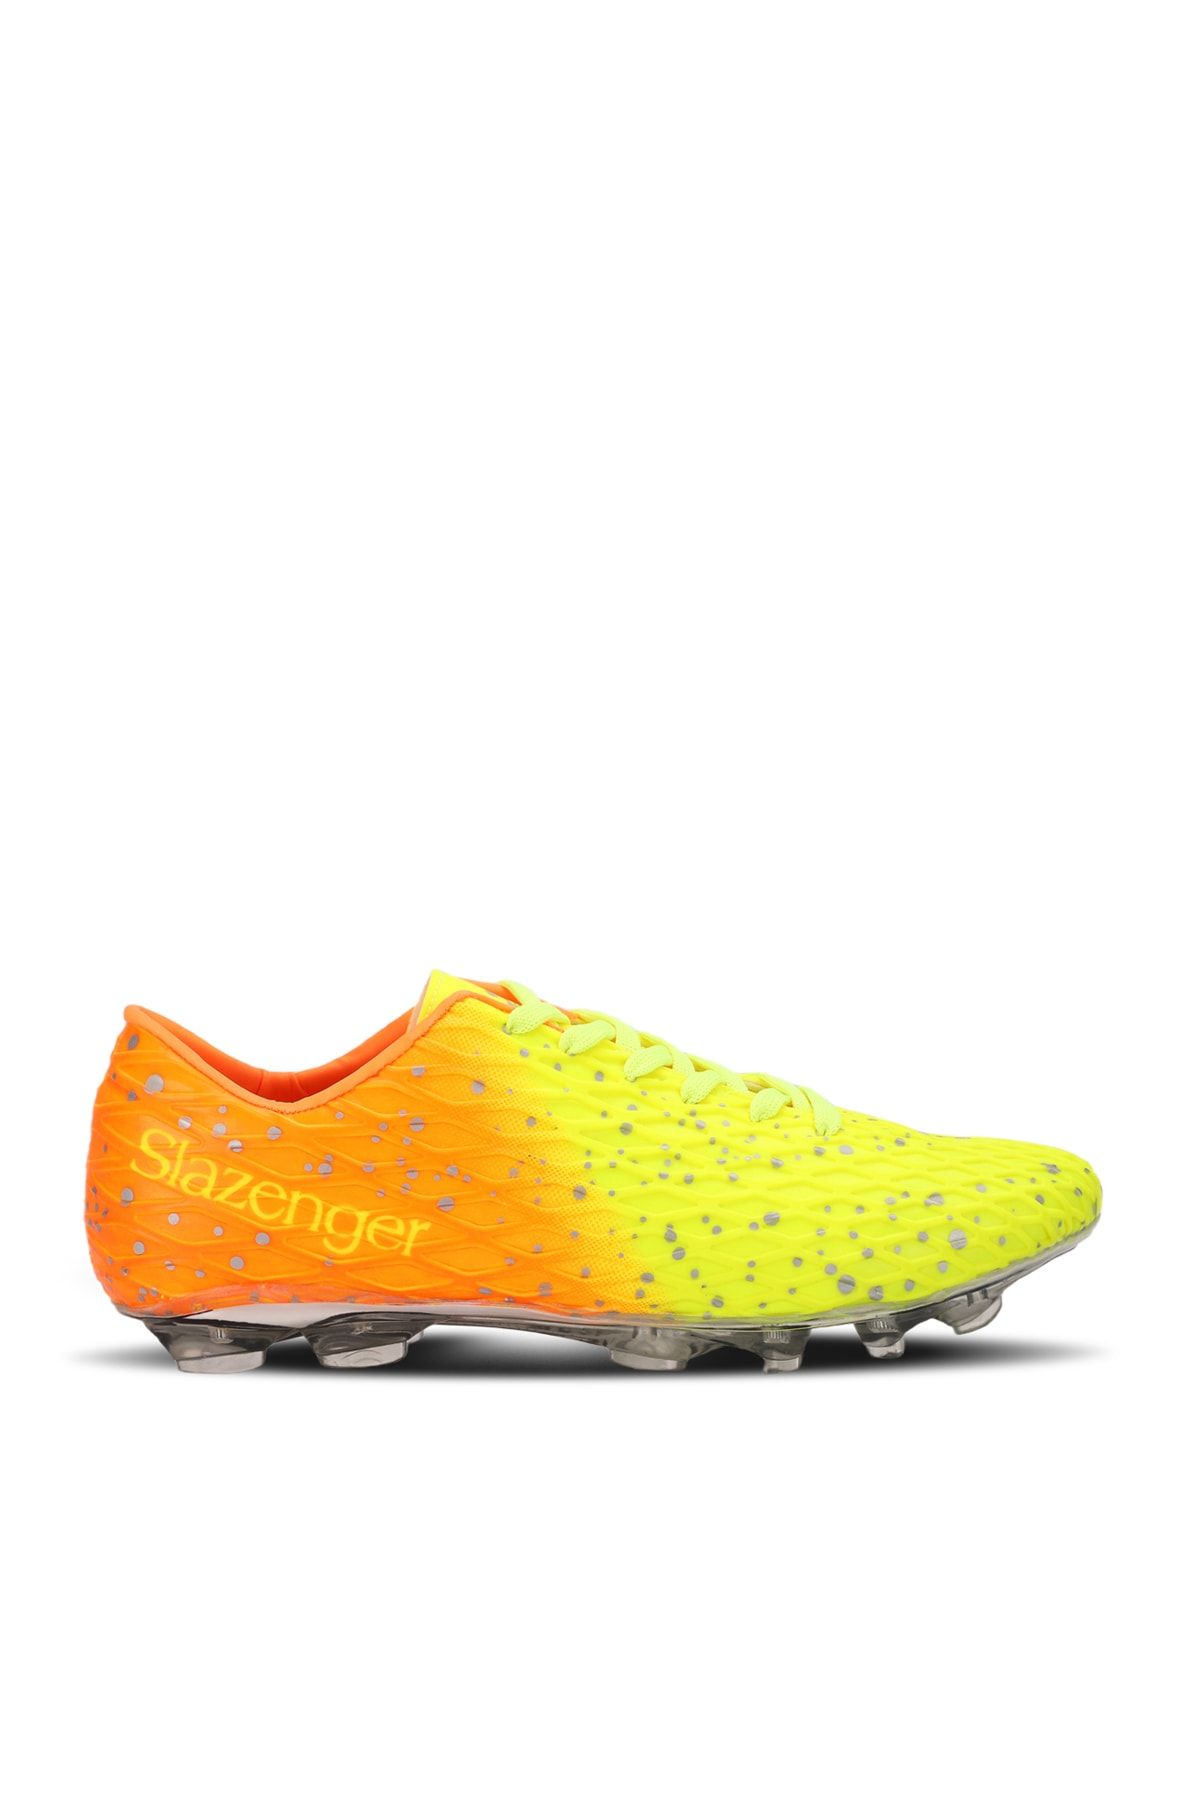 Slazenger Futbol Erkek Çocuk Krampon Ayakkabı Neon Sarı